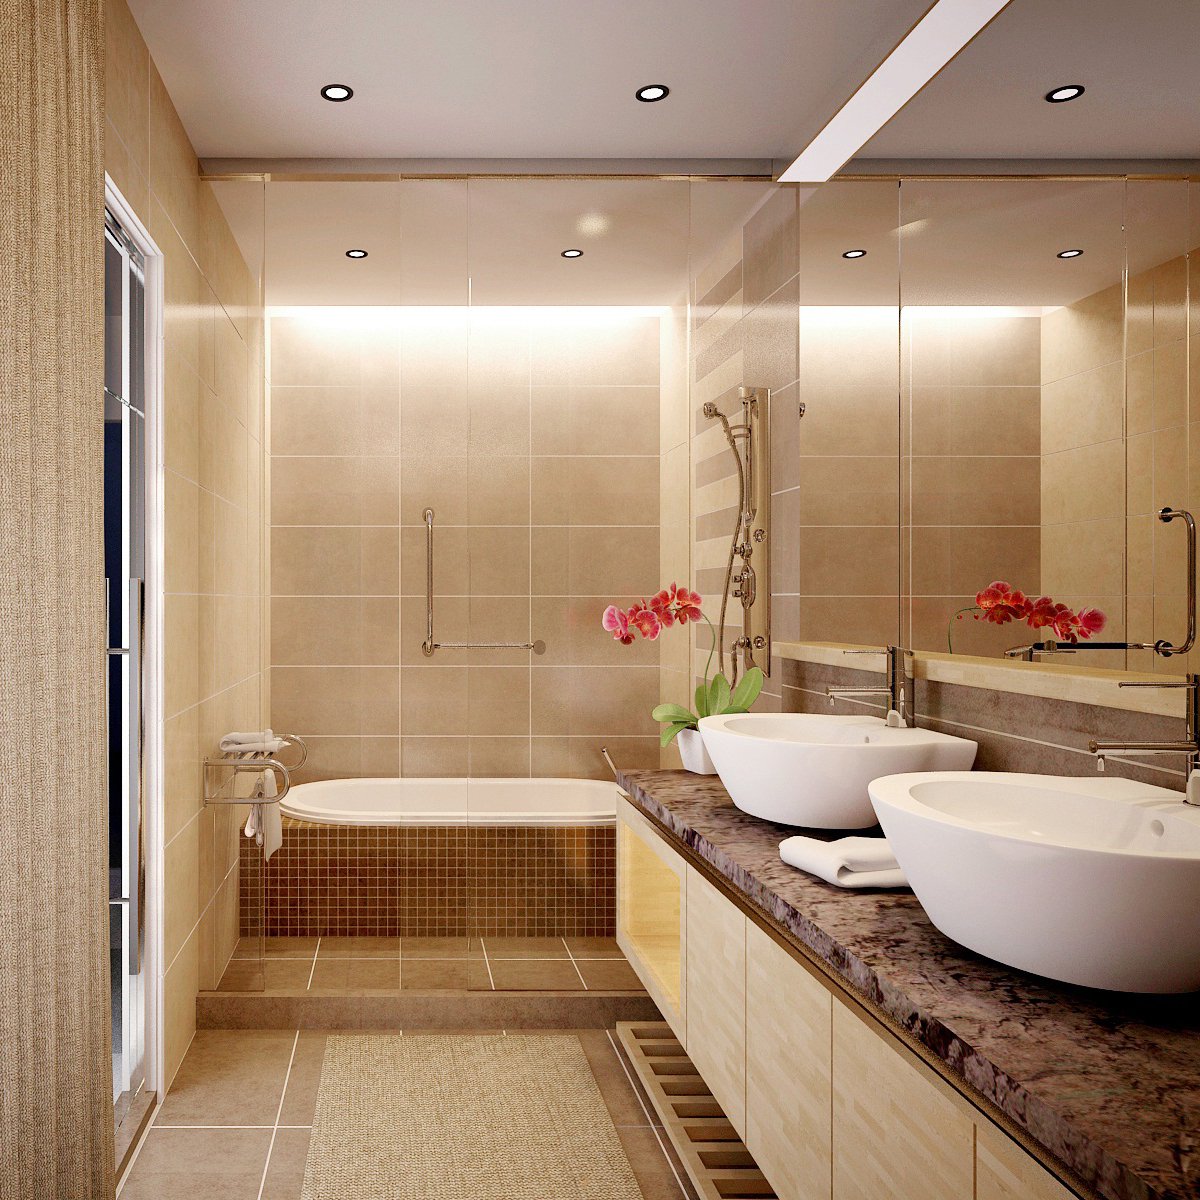 Xu hướng thiết kế nội thất nhà tắm đẹp 2024: Xu hướng thiết kế nội thất nhà tắm đẹp năm 2024 sẽ tập trung vào sự kết hợp giữa tính tiện nghi và thẩm mỹ. Sử dụng các vật liệu cao cấp và phối màu hài hoà, bạn có thể tạo ra một không gian tắm đẹp và hiện đại cho gia đình bạn.